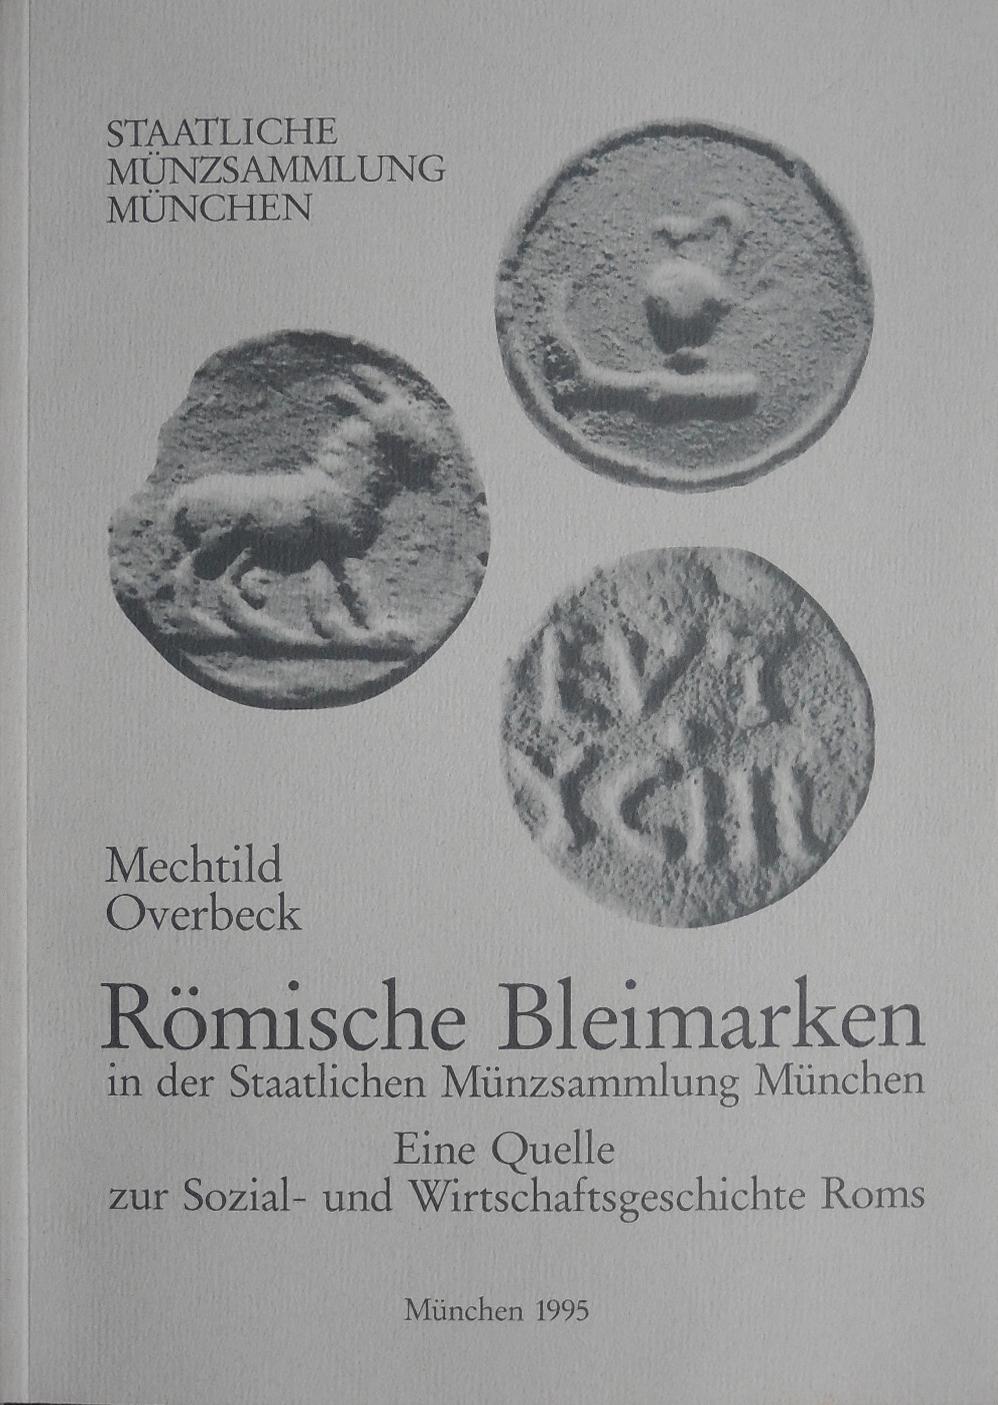 Römische Bleimarken in der Staatlichen Münzsammlung München: Eine Quelle zur Sozial- und Wirtschaftsgeschichte Roms (Kataloge der Staatlichen Münzsammlung München)